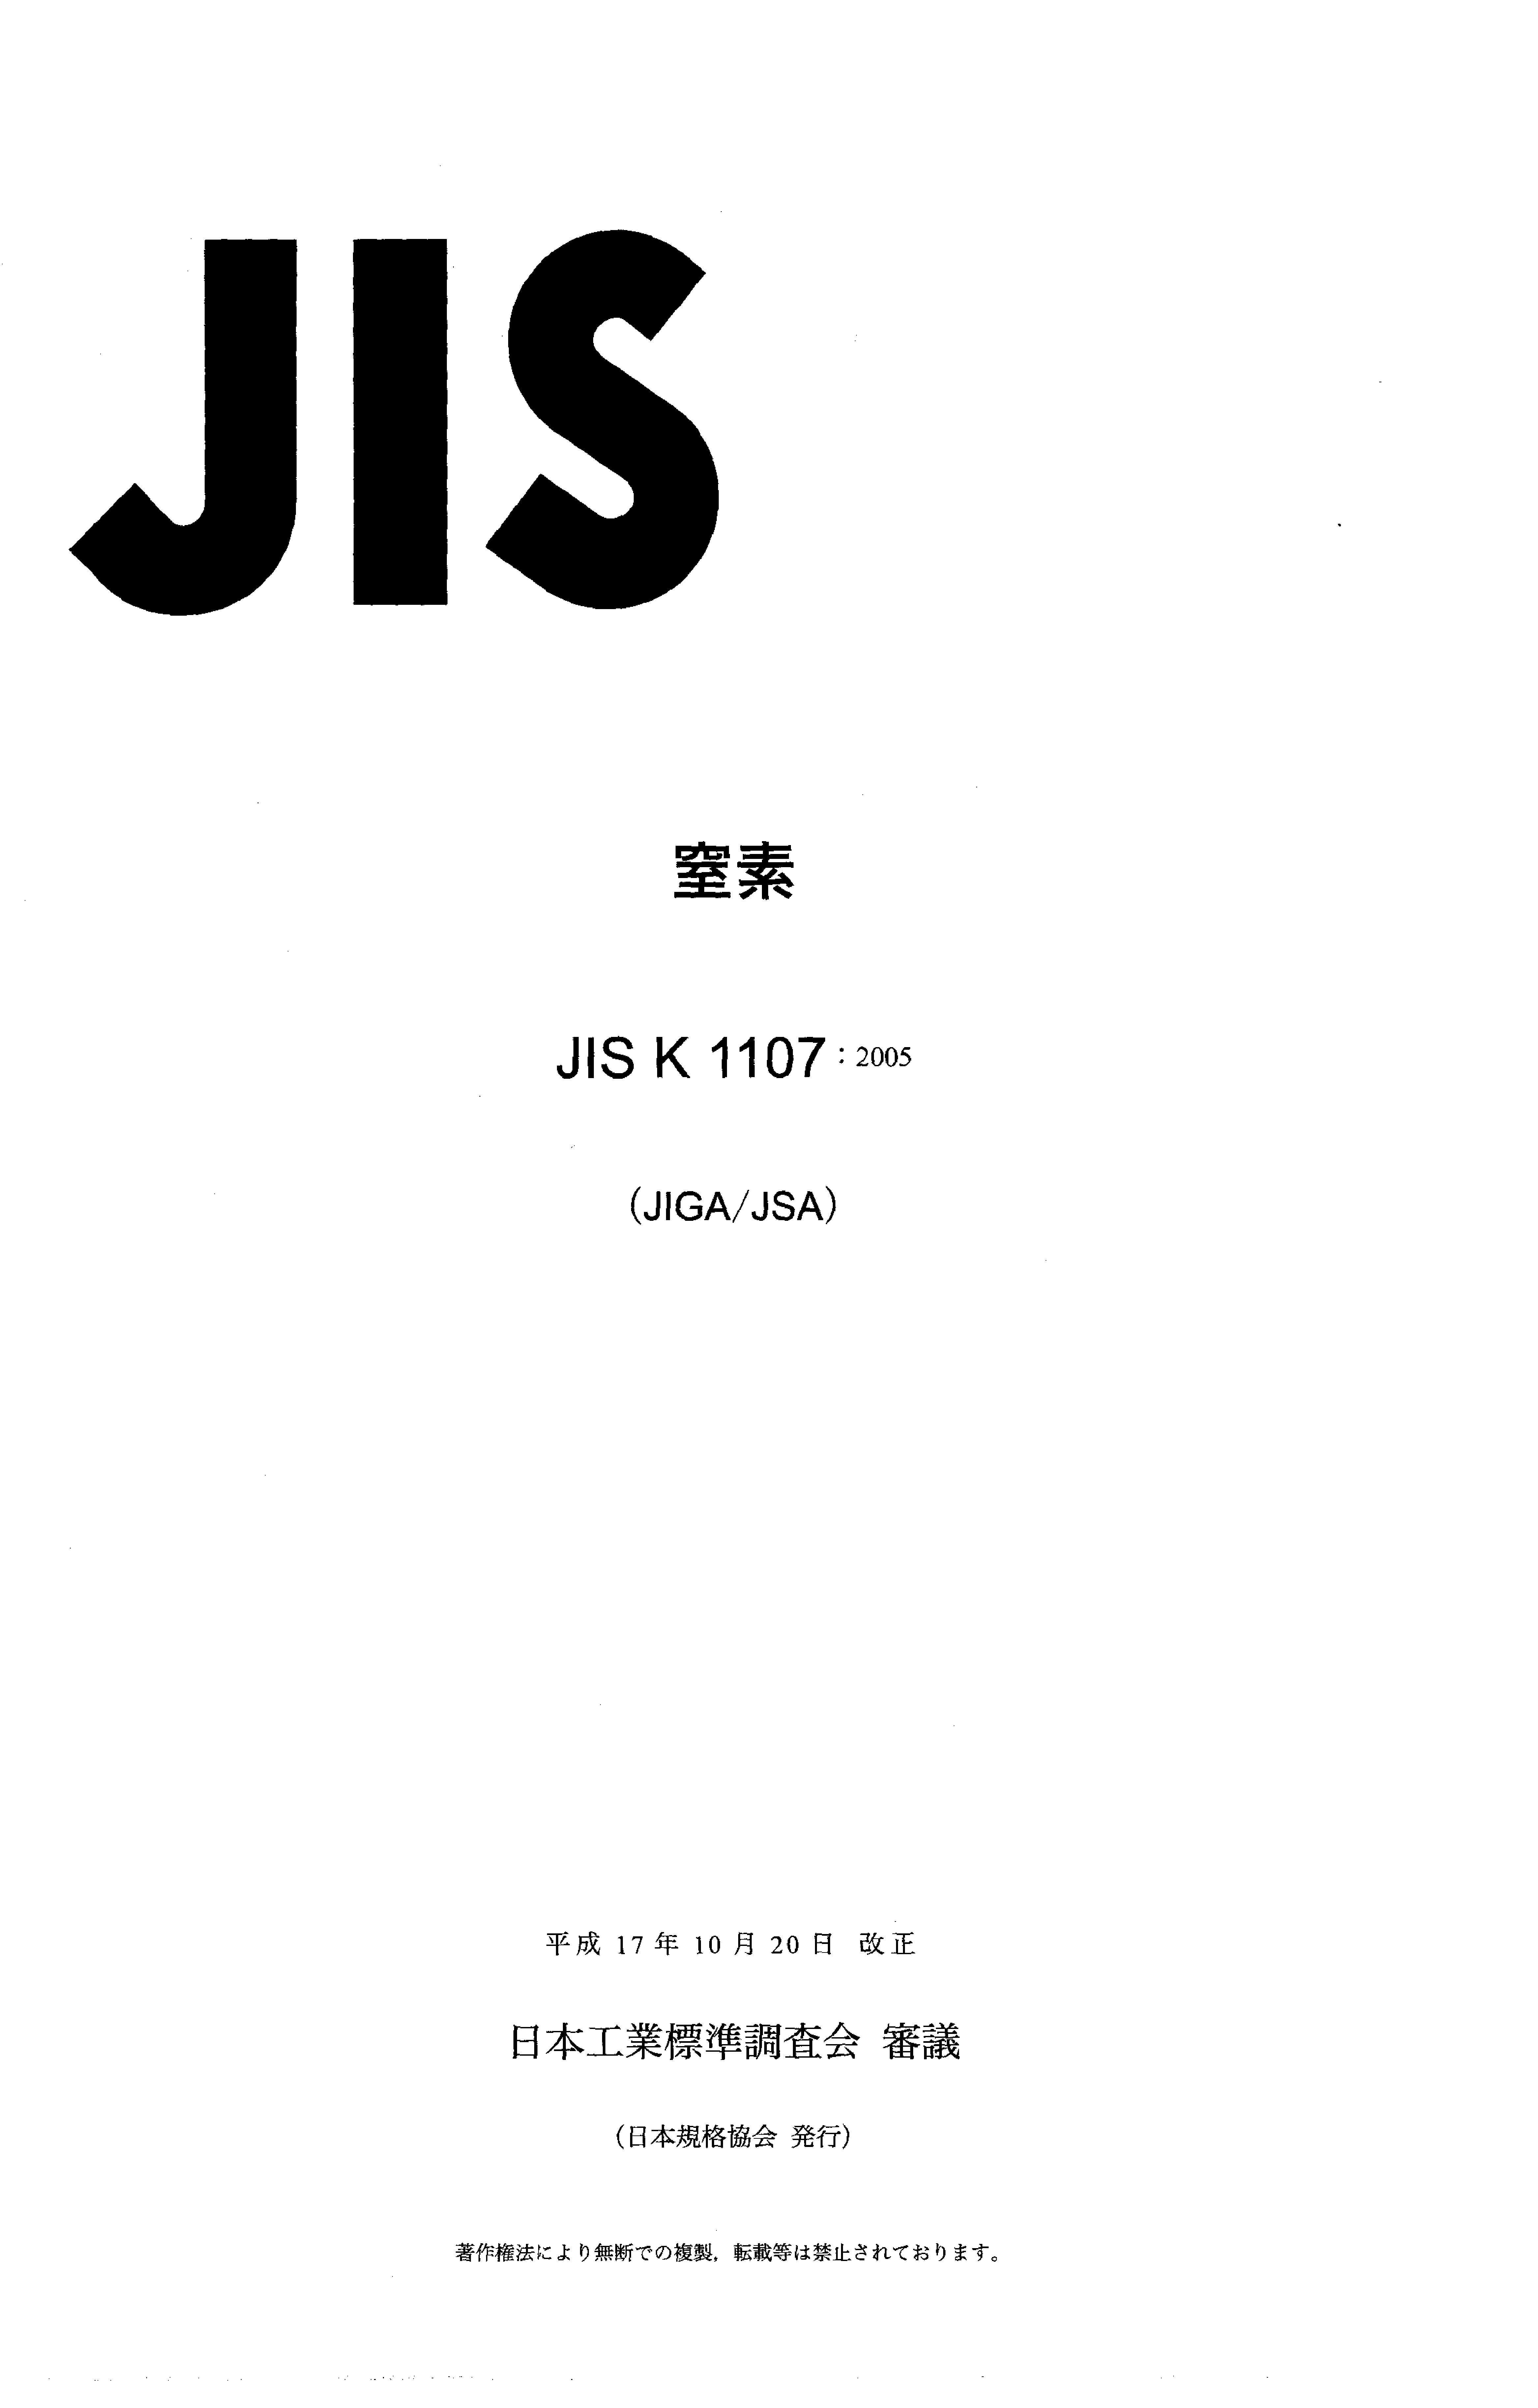 JIS K 1107:2005